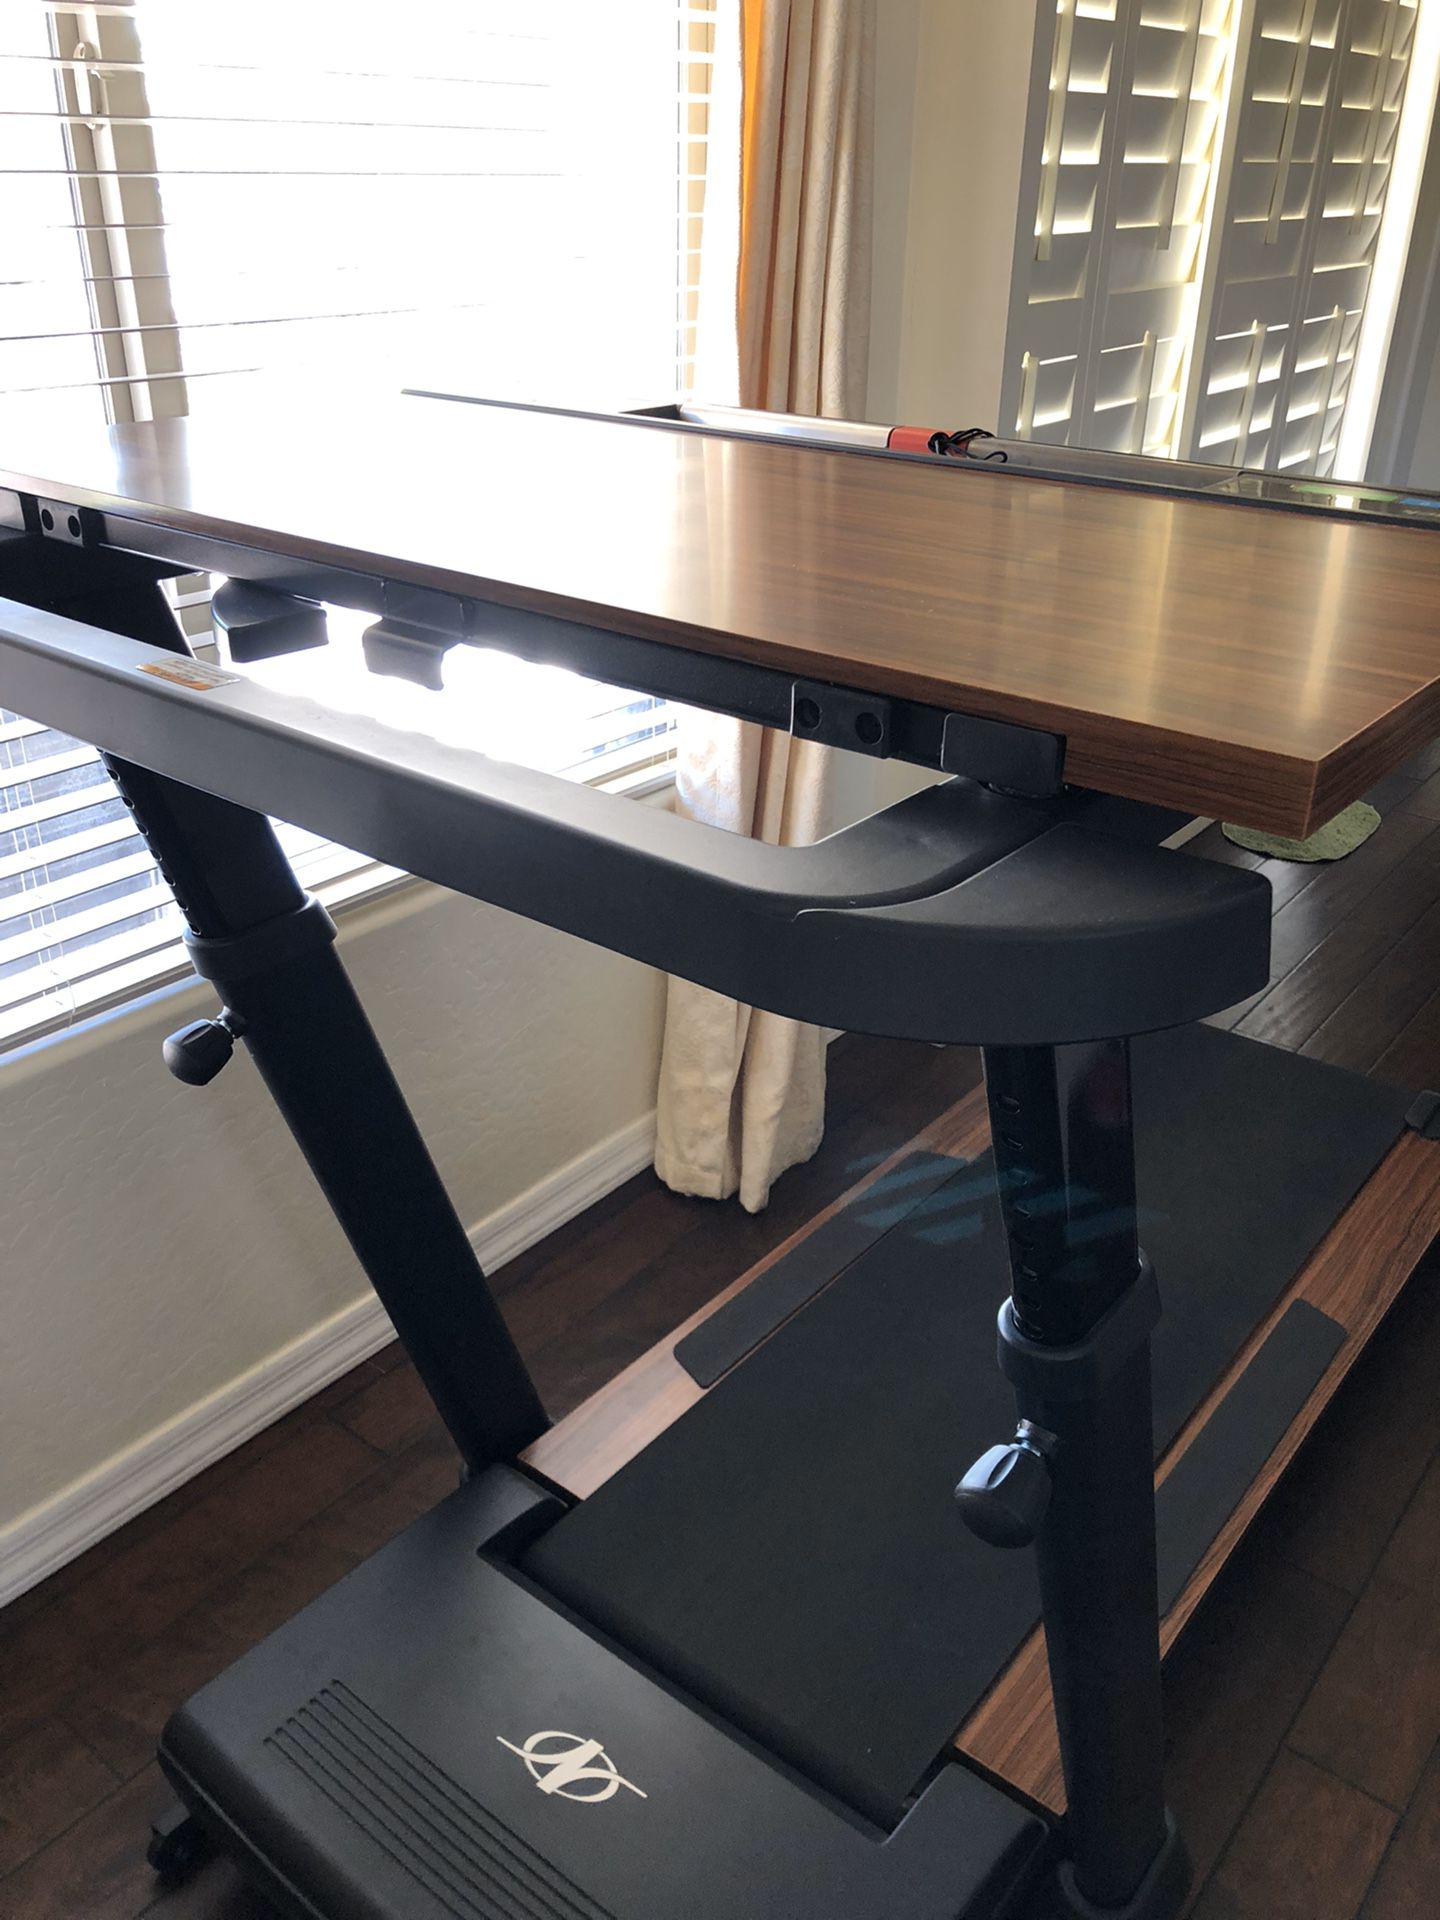 Nordicktrack treadmill desk